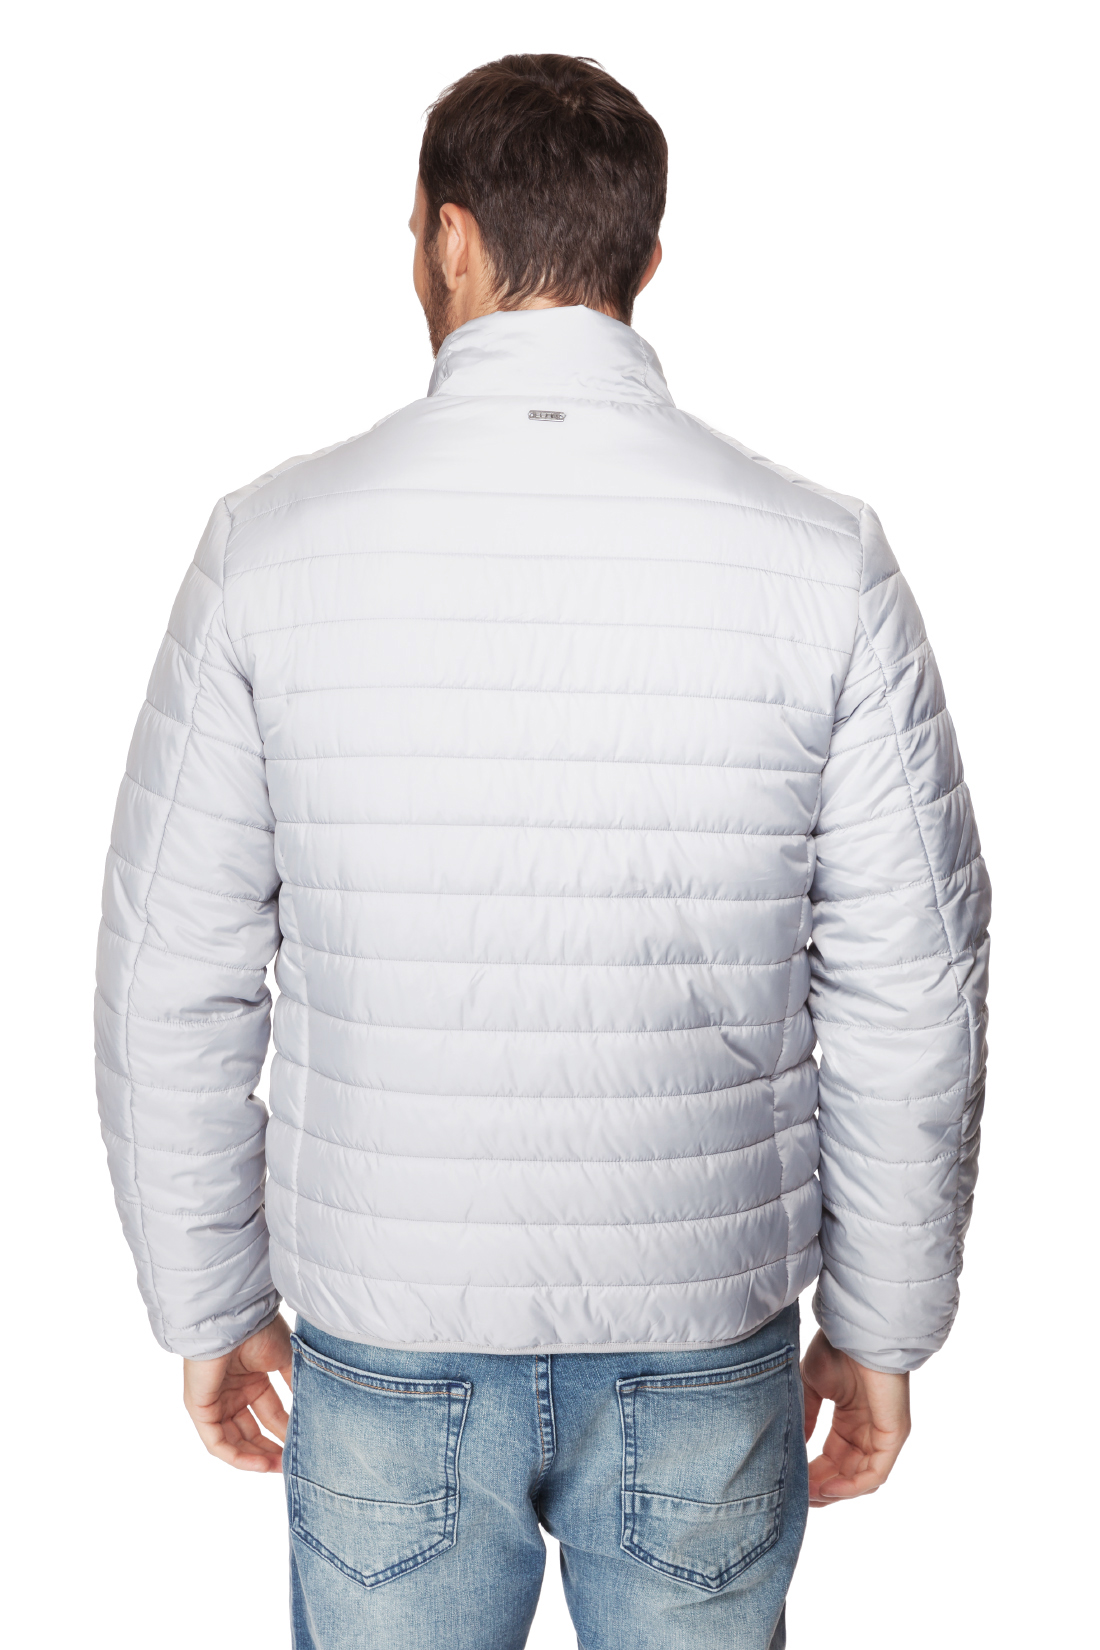 Базовая куртка на молнии (арт. baon B537201), размер M, цвет белый Базовая куртка на молнии (арт. baon B537201) - фото 2